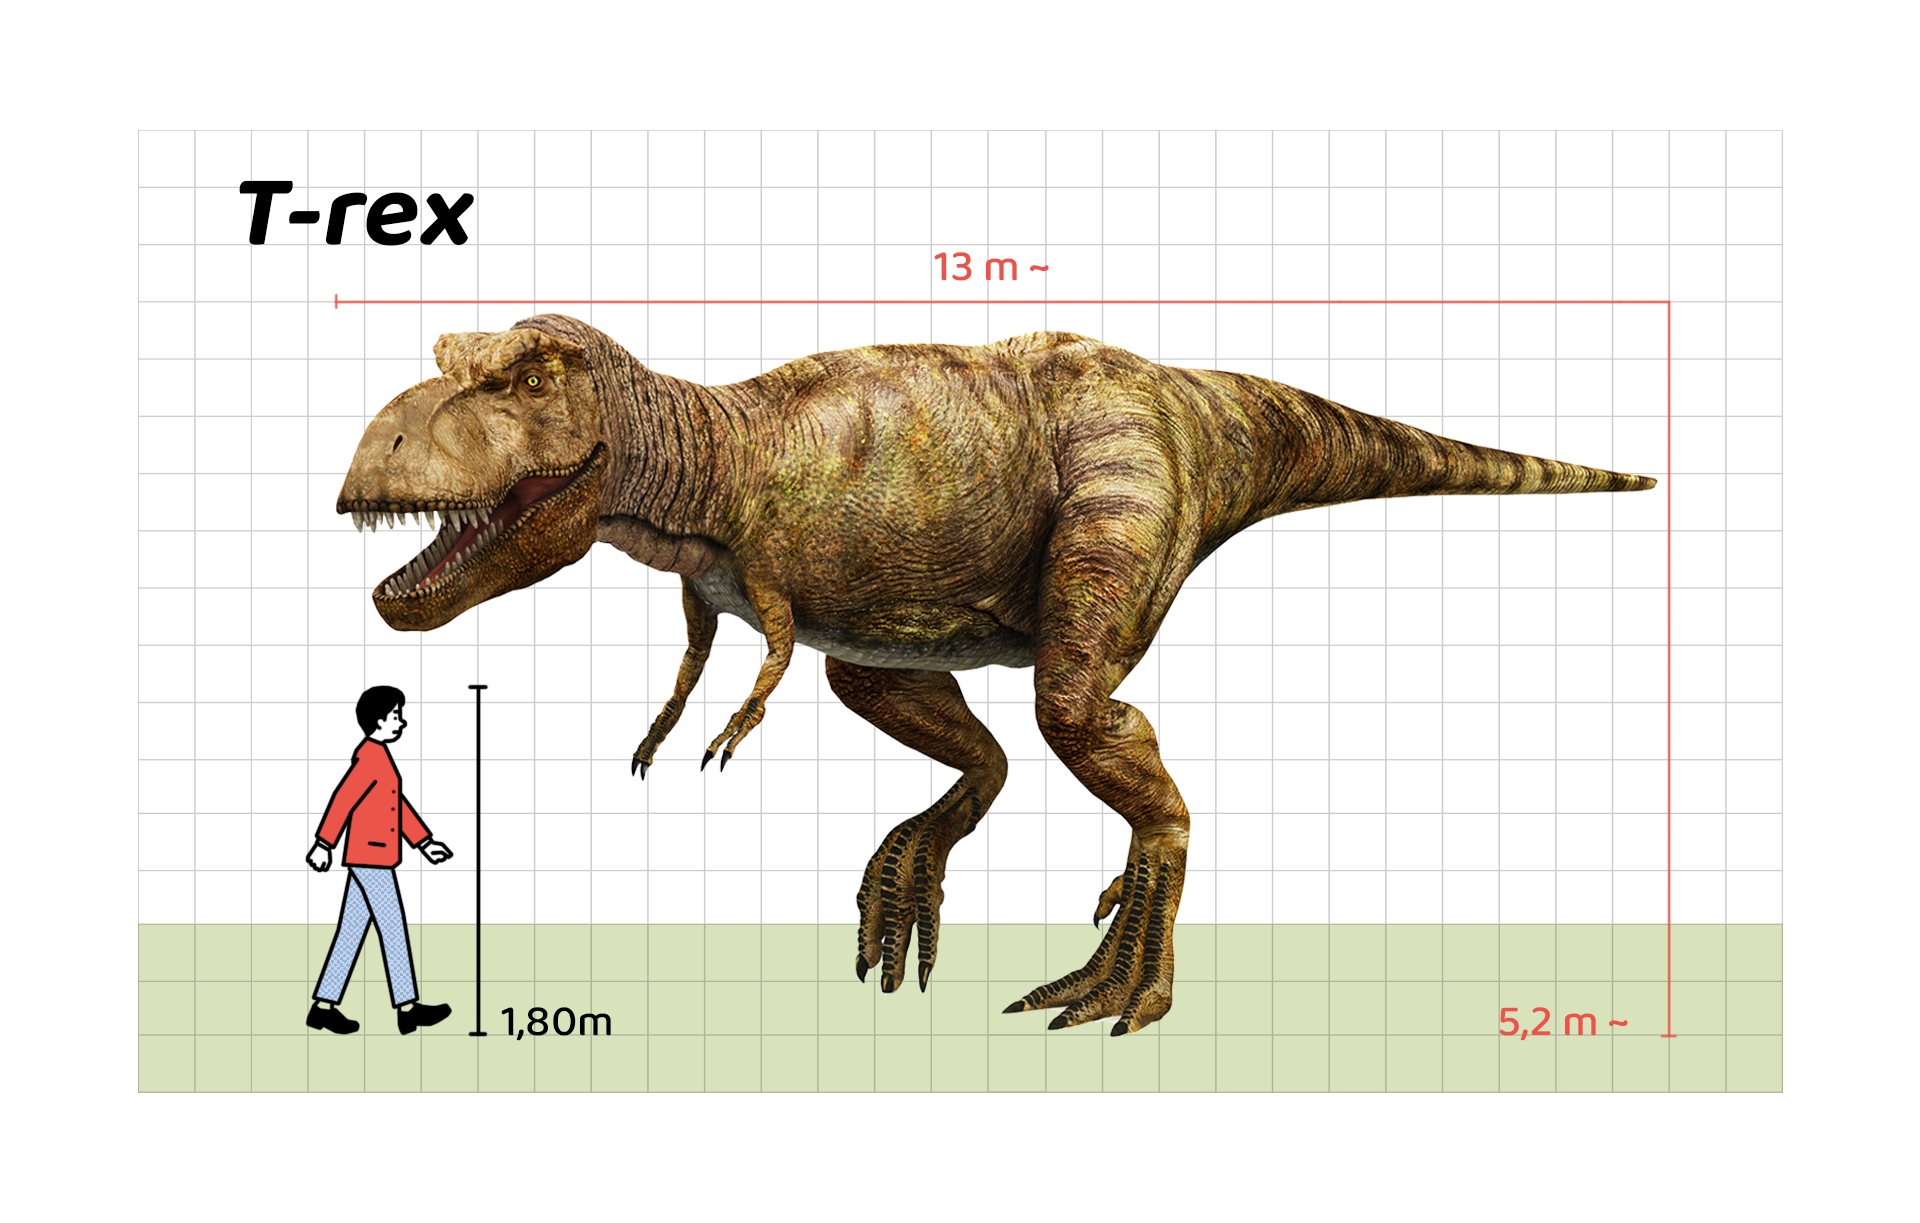 İnsan boyu ile T.rex’in büyüklüğünün karşılaştırılması